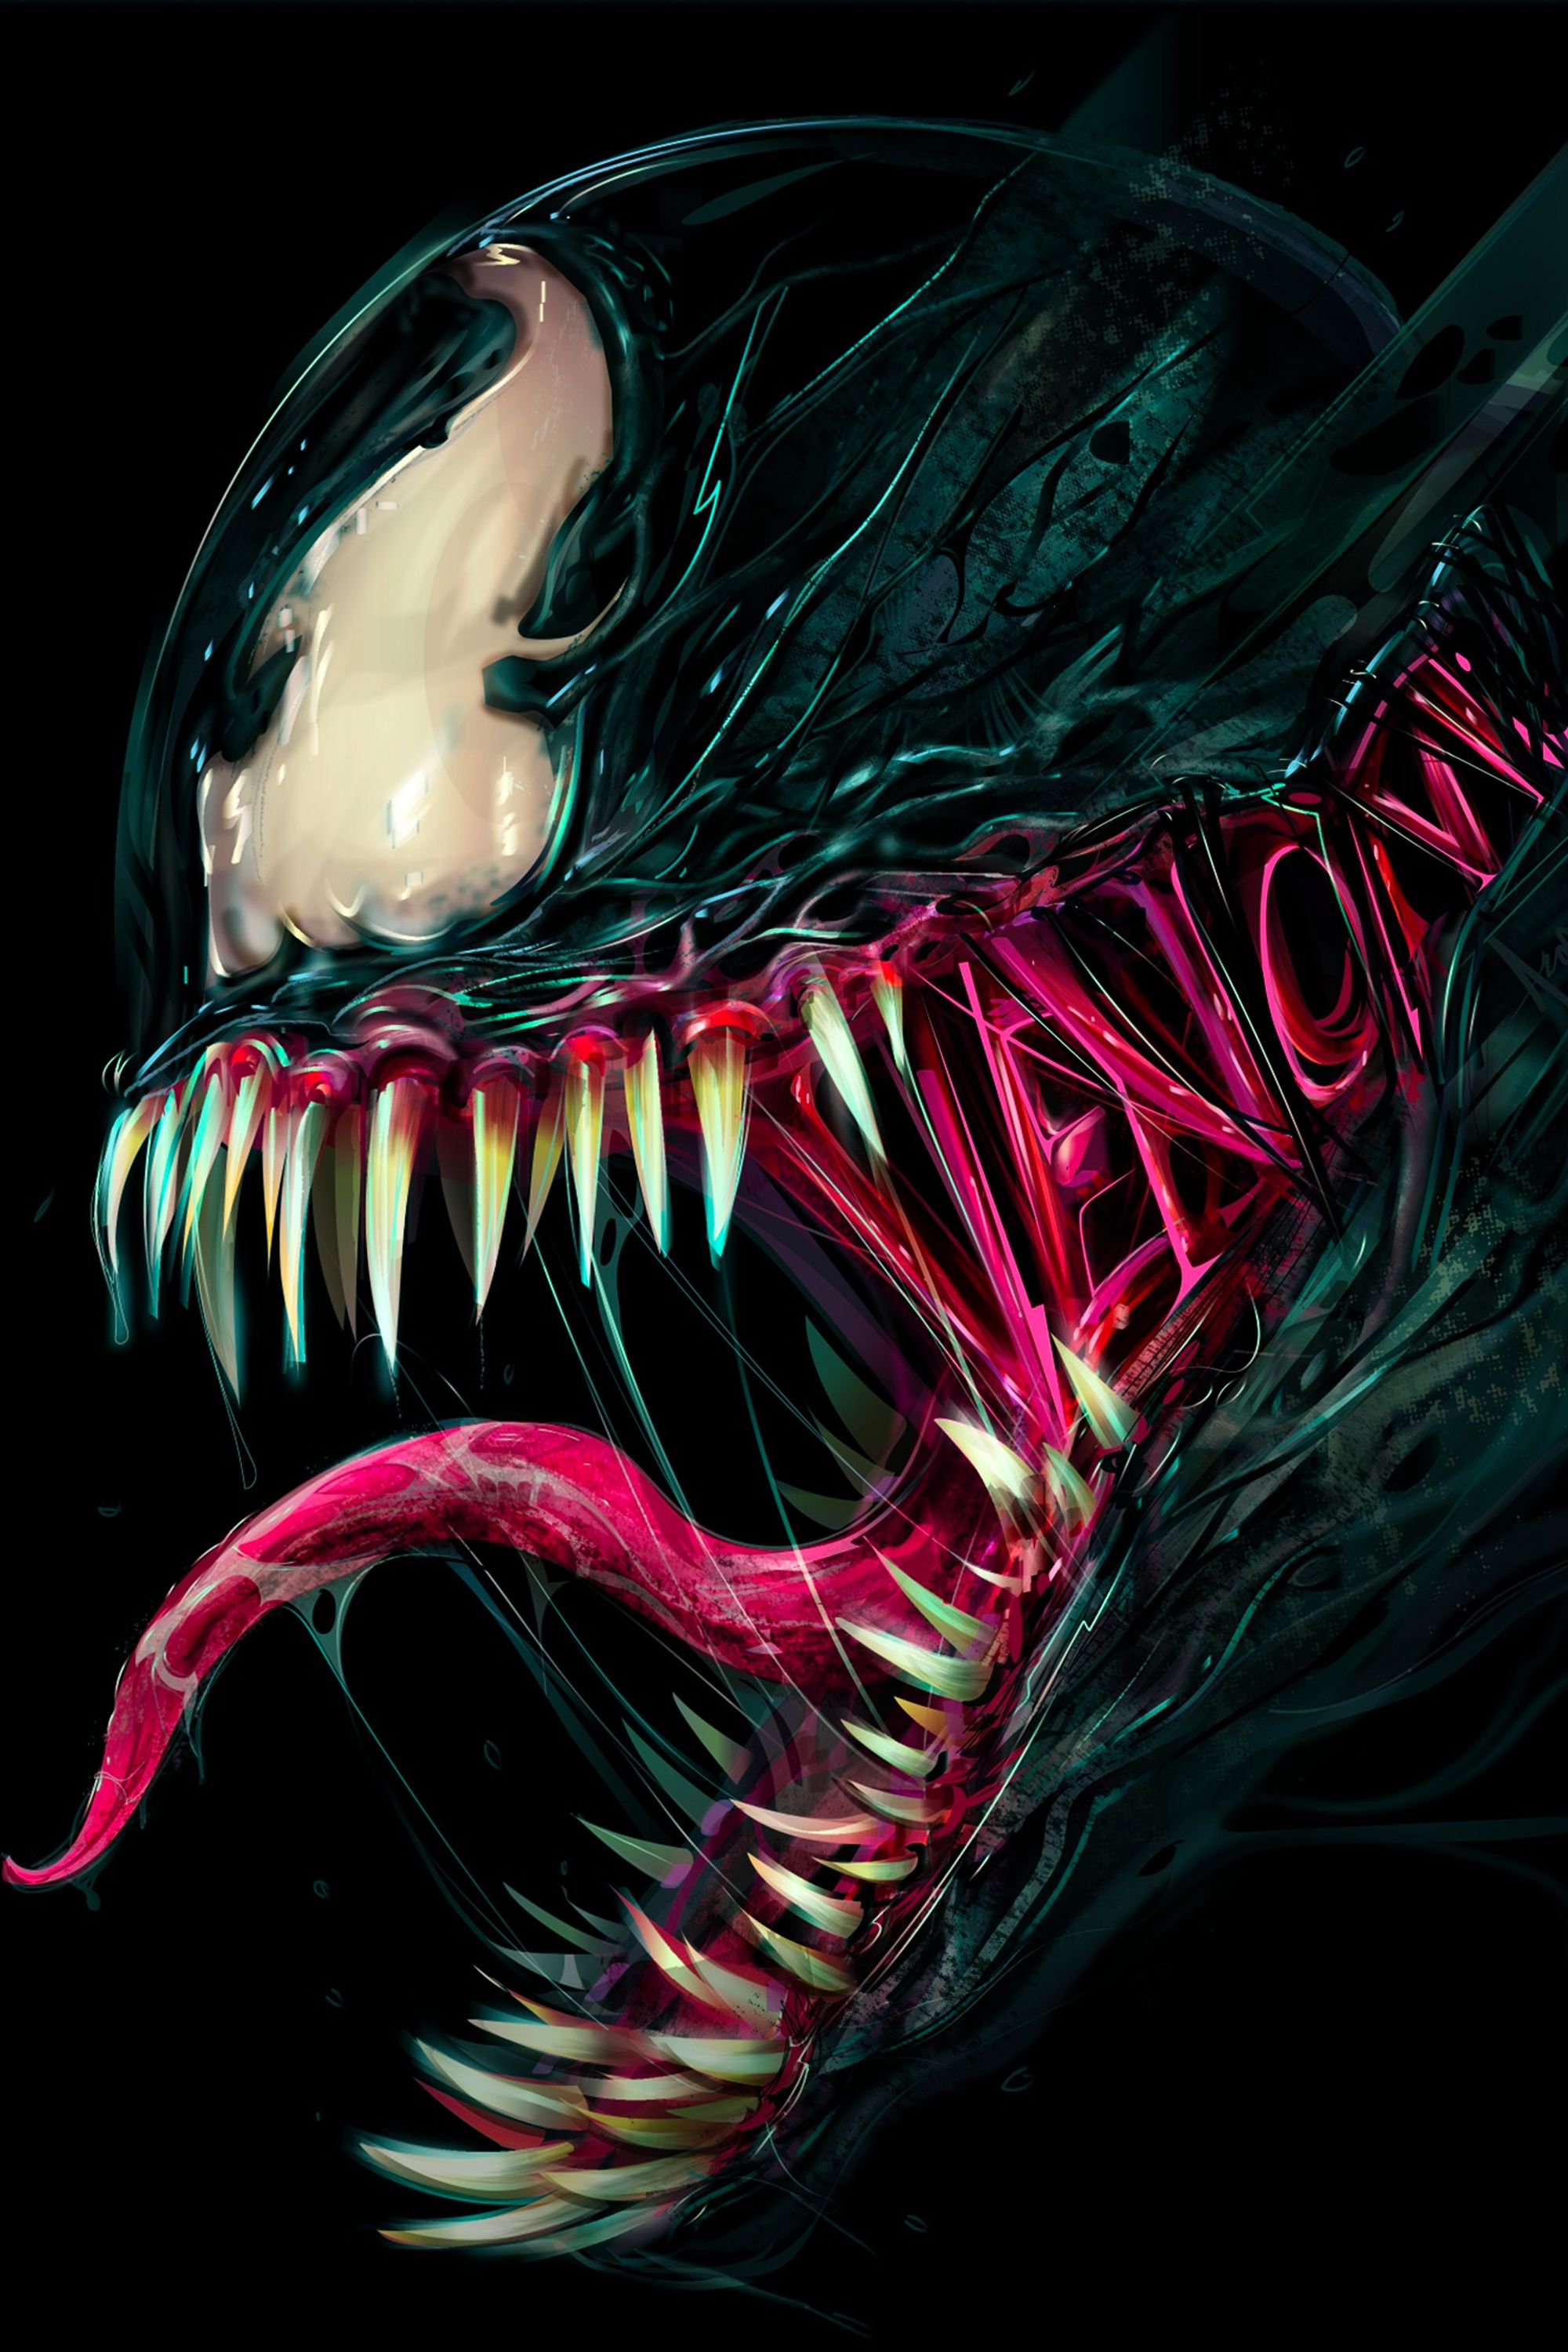 Kraven The Hunter Release Date Delayed, Now Arriving After Venom 3